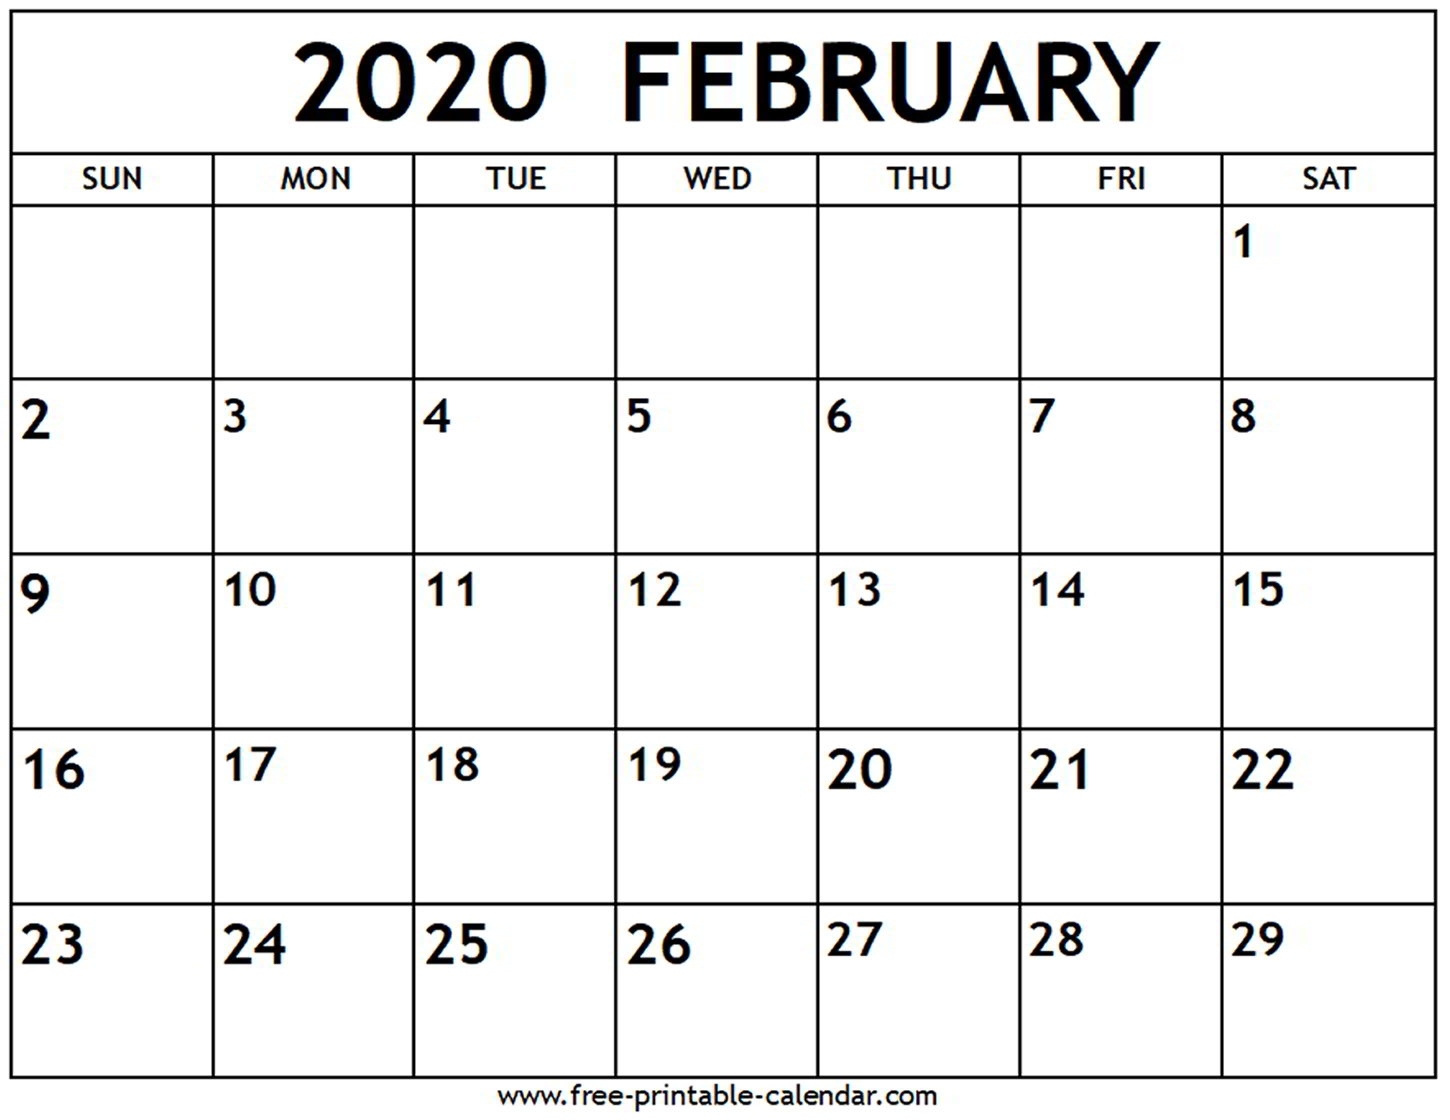 February 2020 Calendar - Free-Printable-Calendar Free Printable Calendar 2020 Uk